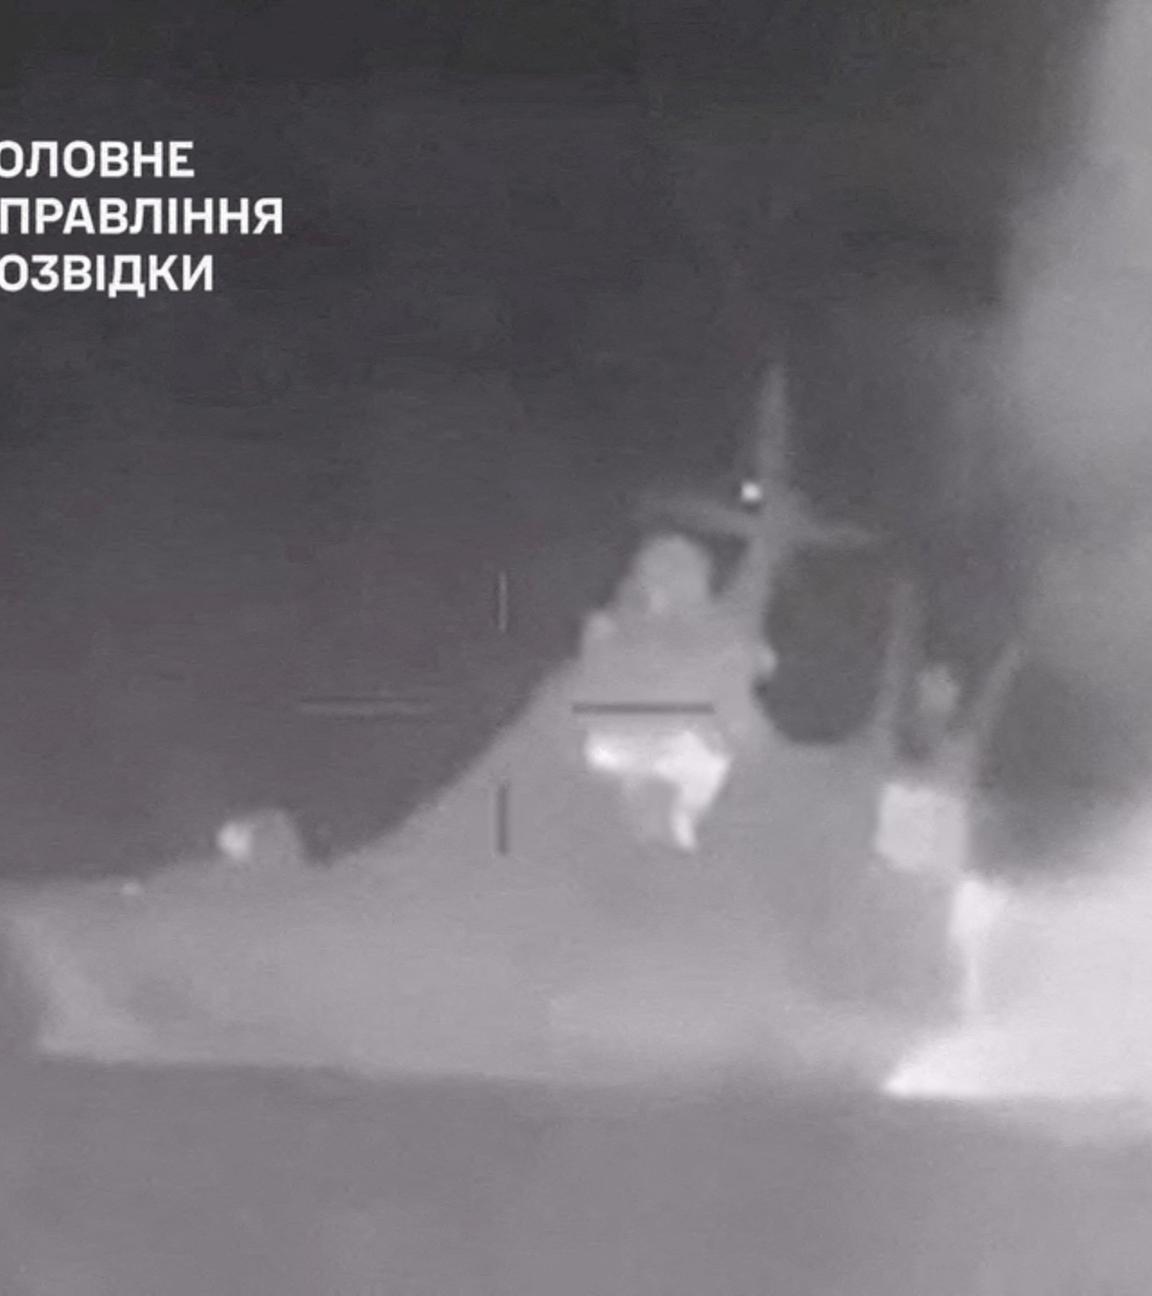  Rauch, der von dem russischen Patrouillenschiff der Schwarzmeerflotte Sergej Kotow aufsteigt, das nach Angaben des ukrainischen Militärgeheimdienstes von ukrainischen Seedrohnen beschädigt wurde.